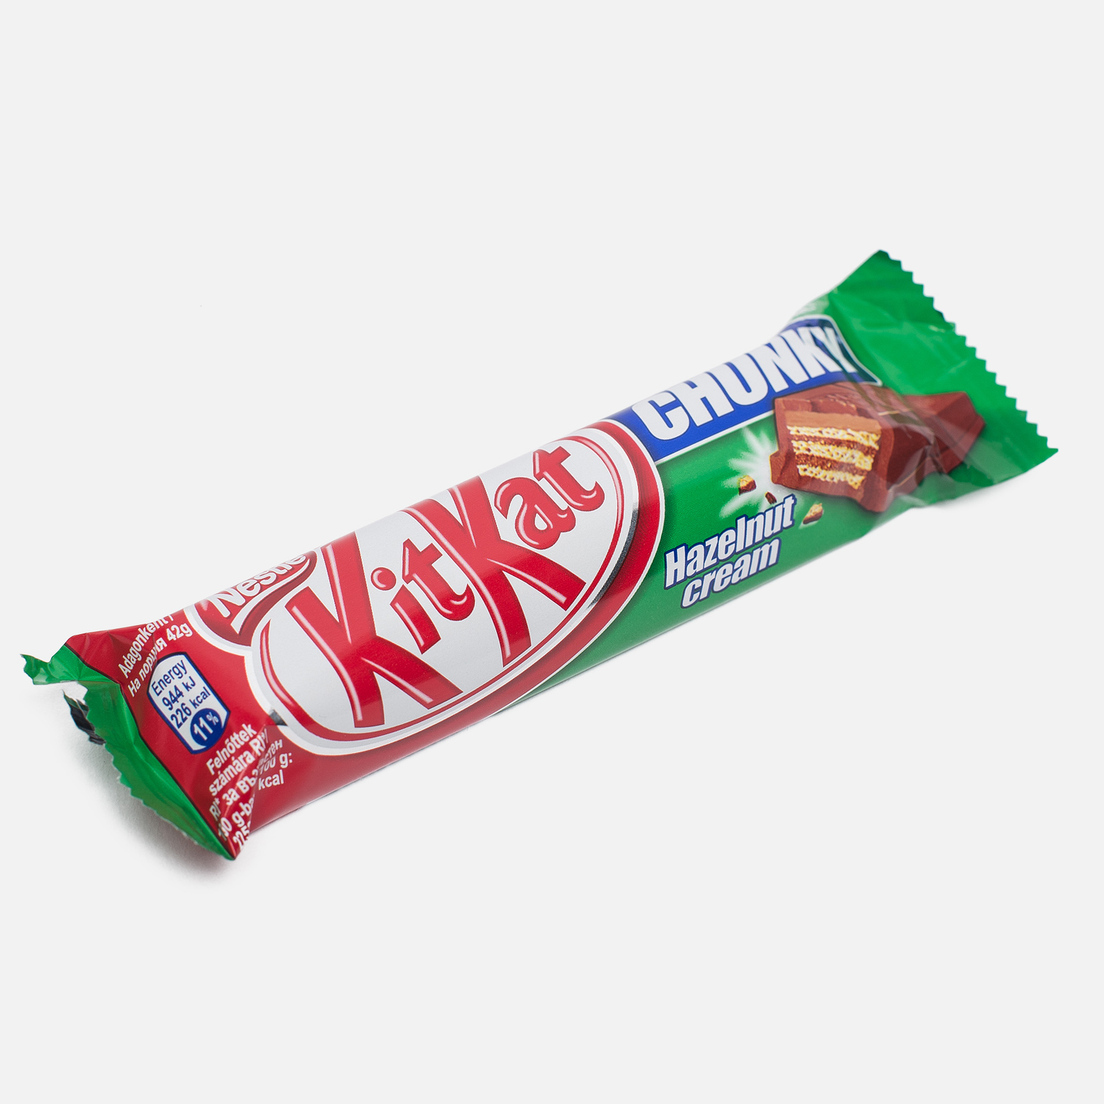 KitKat Шоколадный батончик Chunky Hazelnut 42g